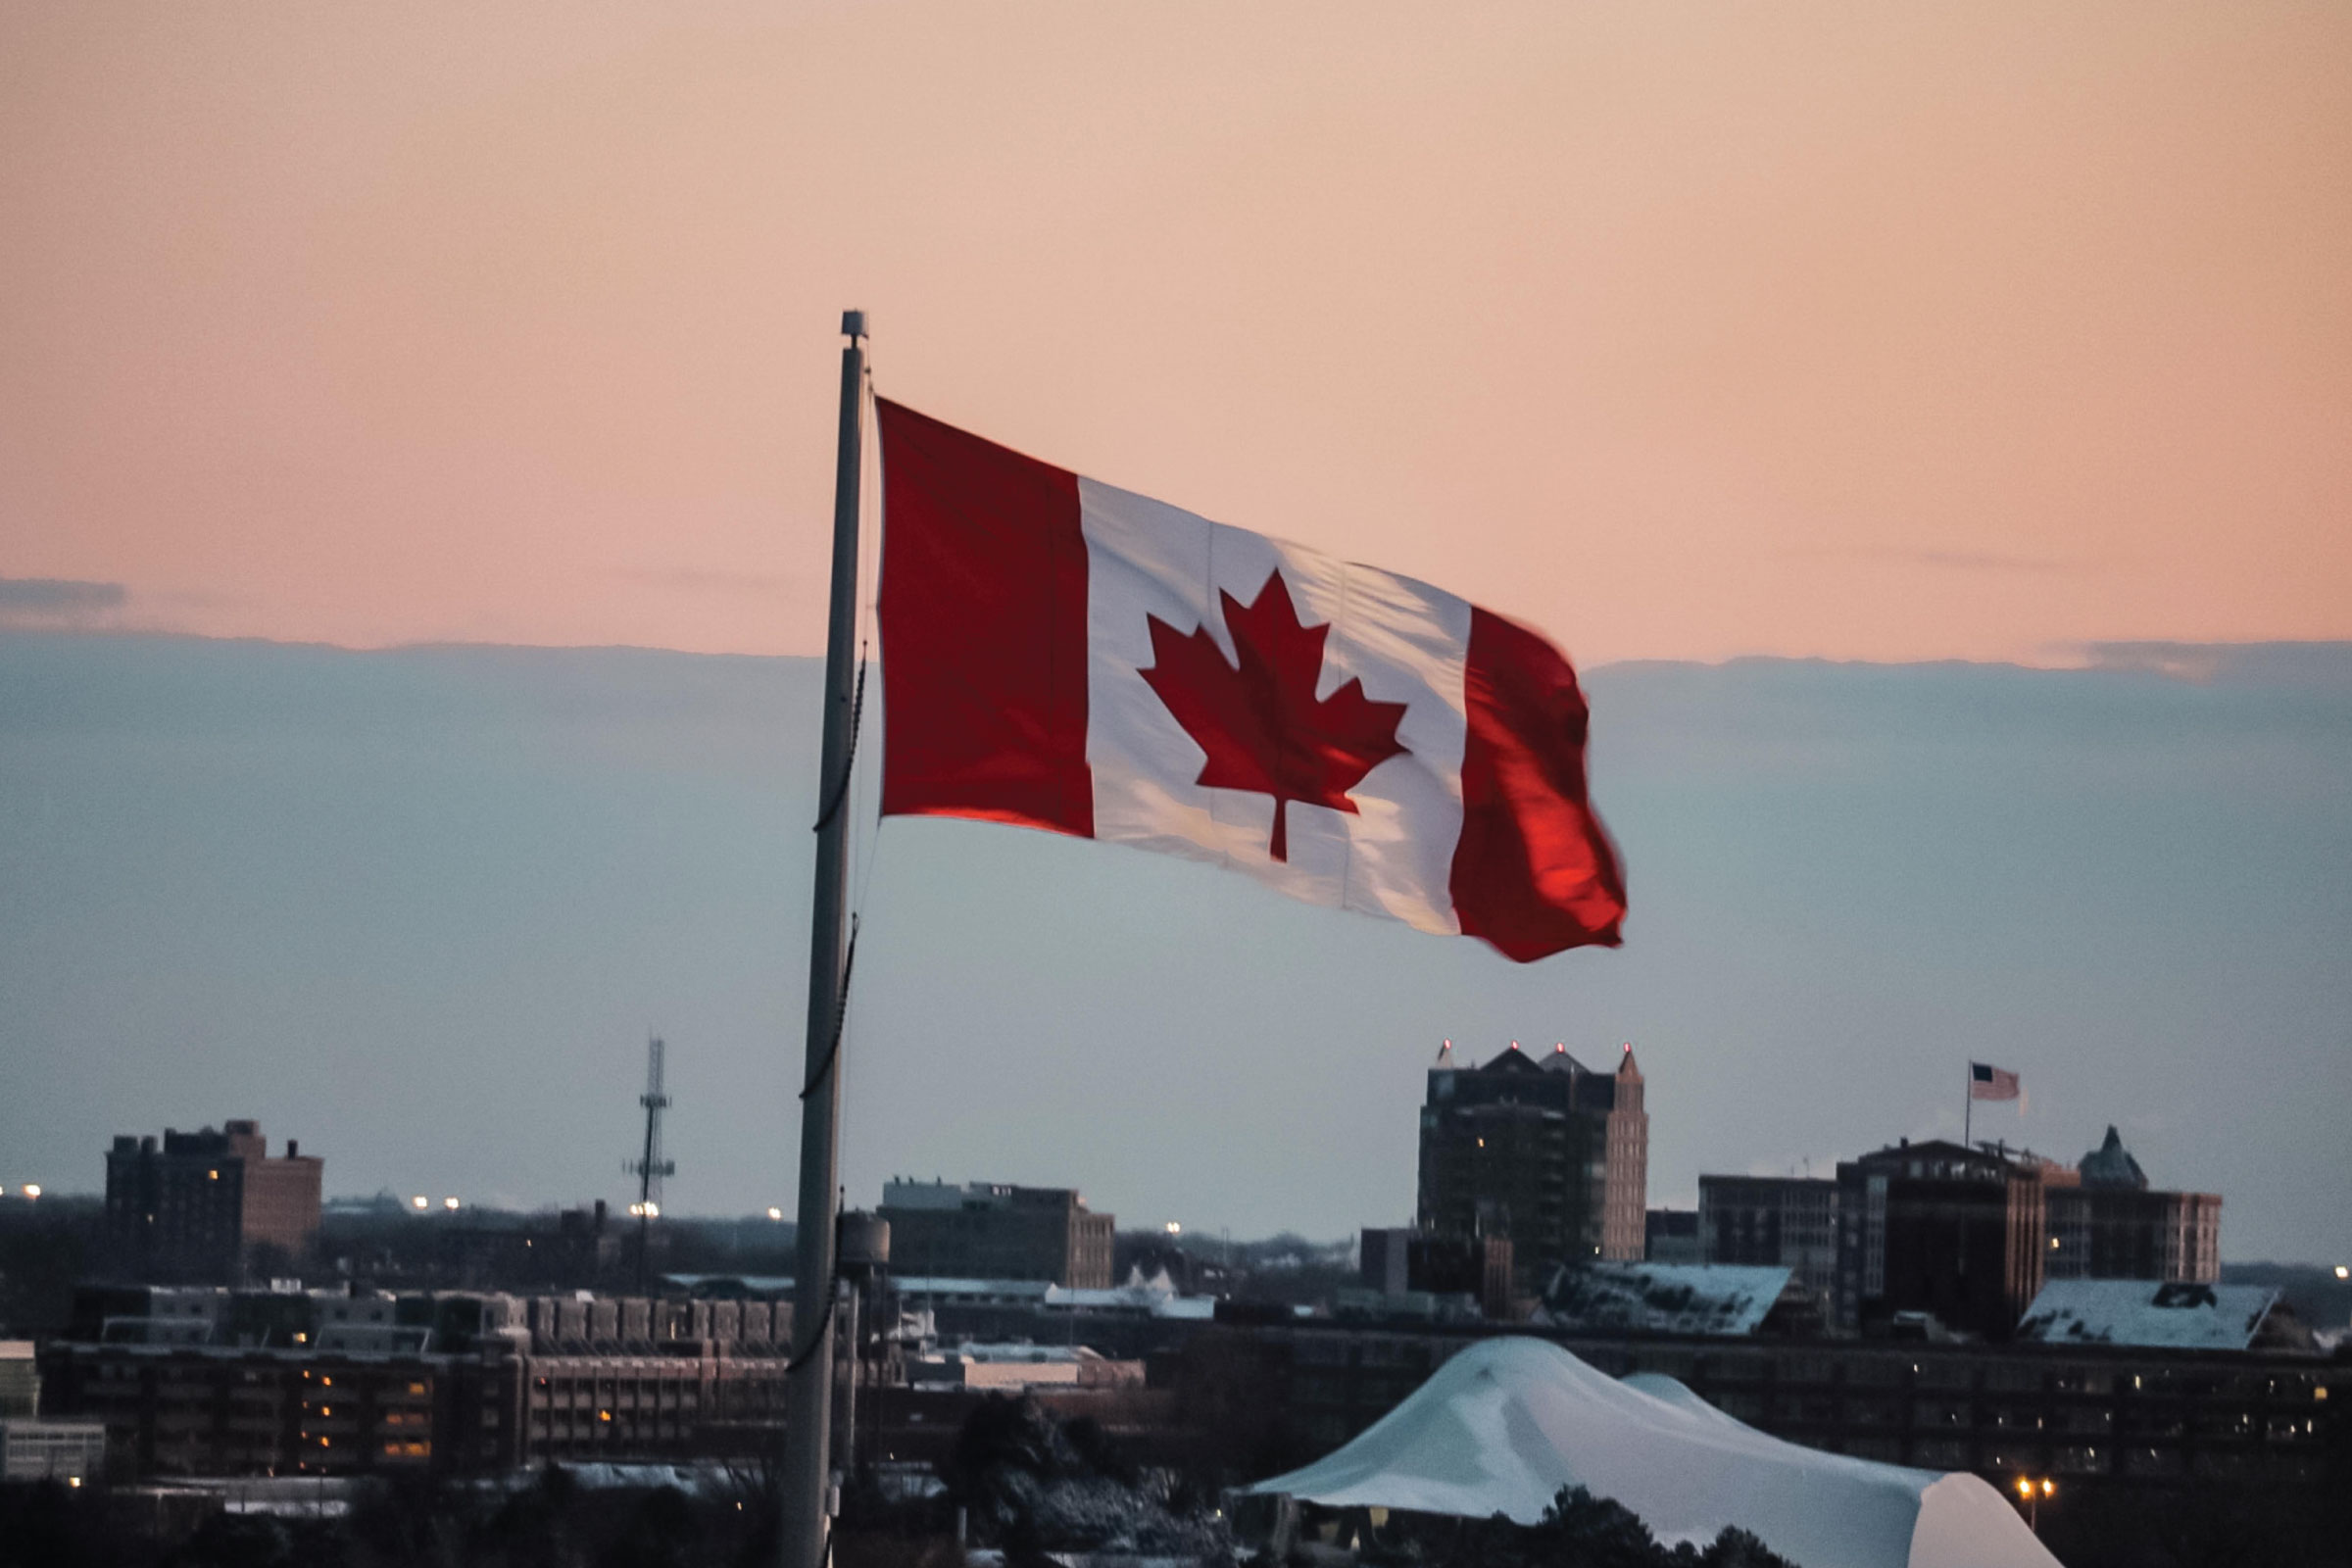 Canadian flag over landscape.